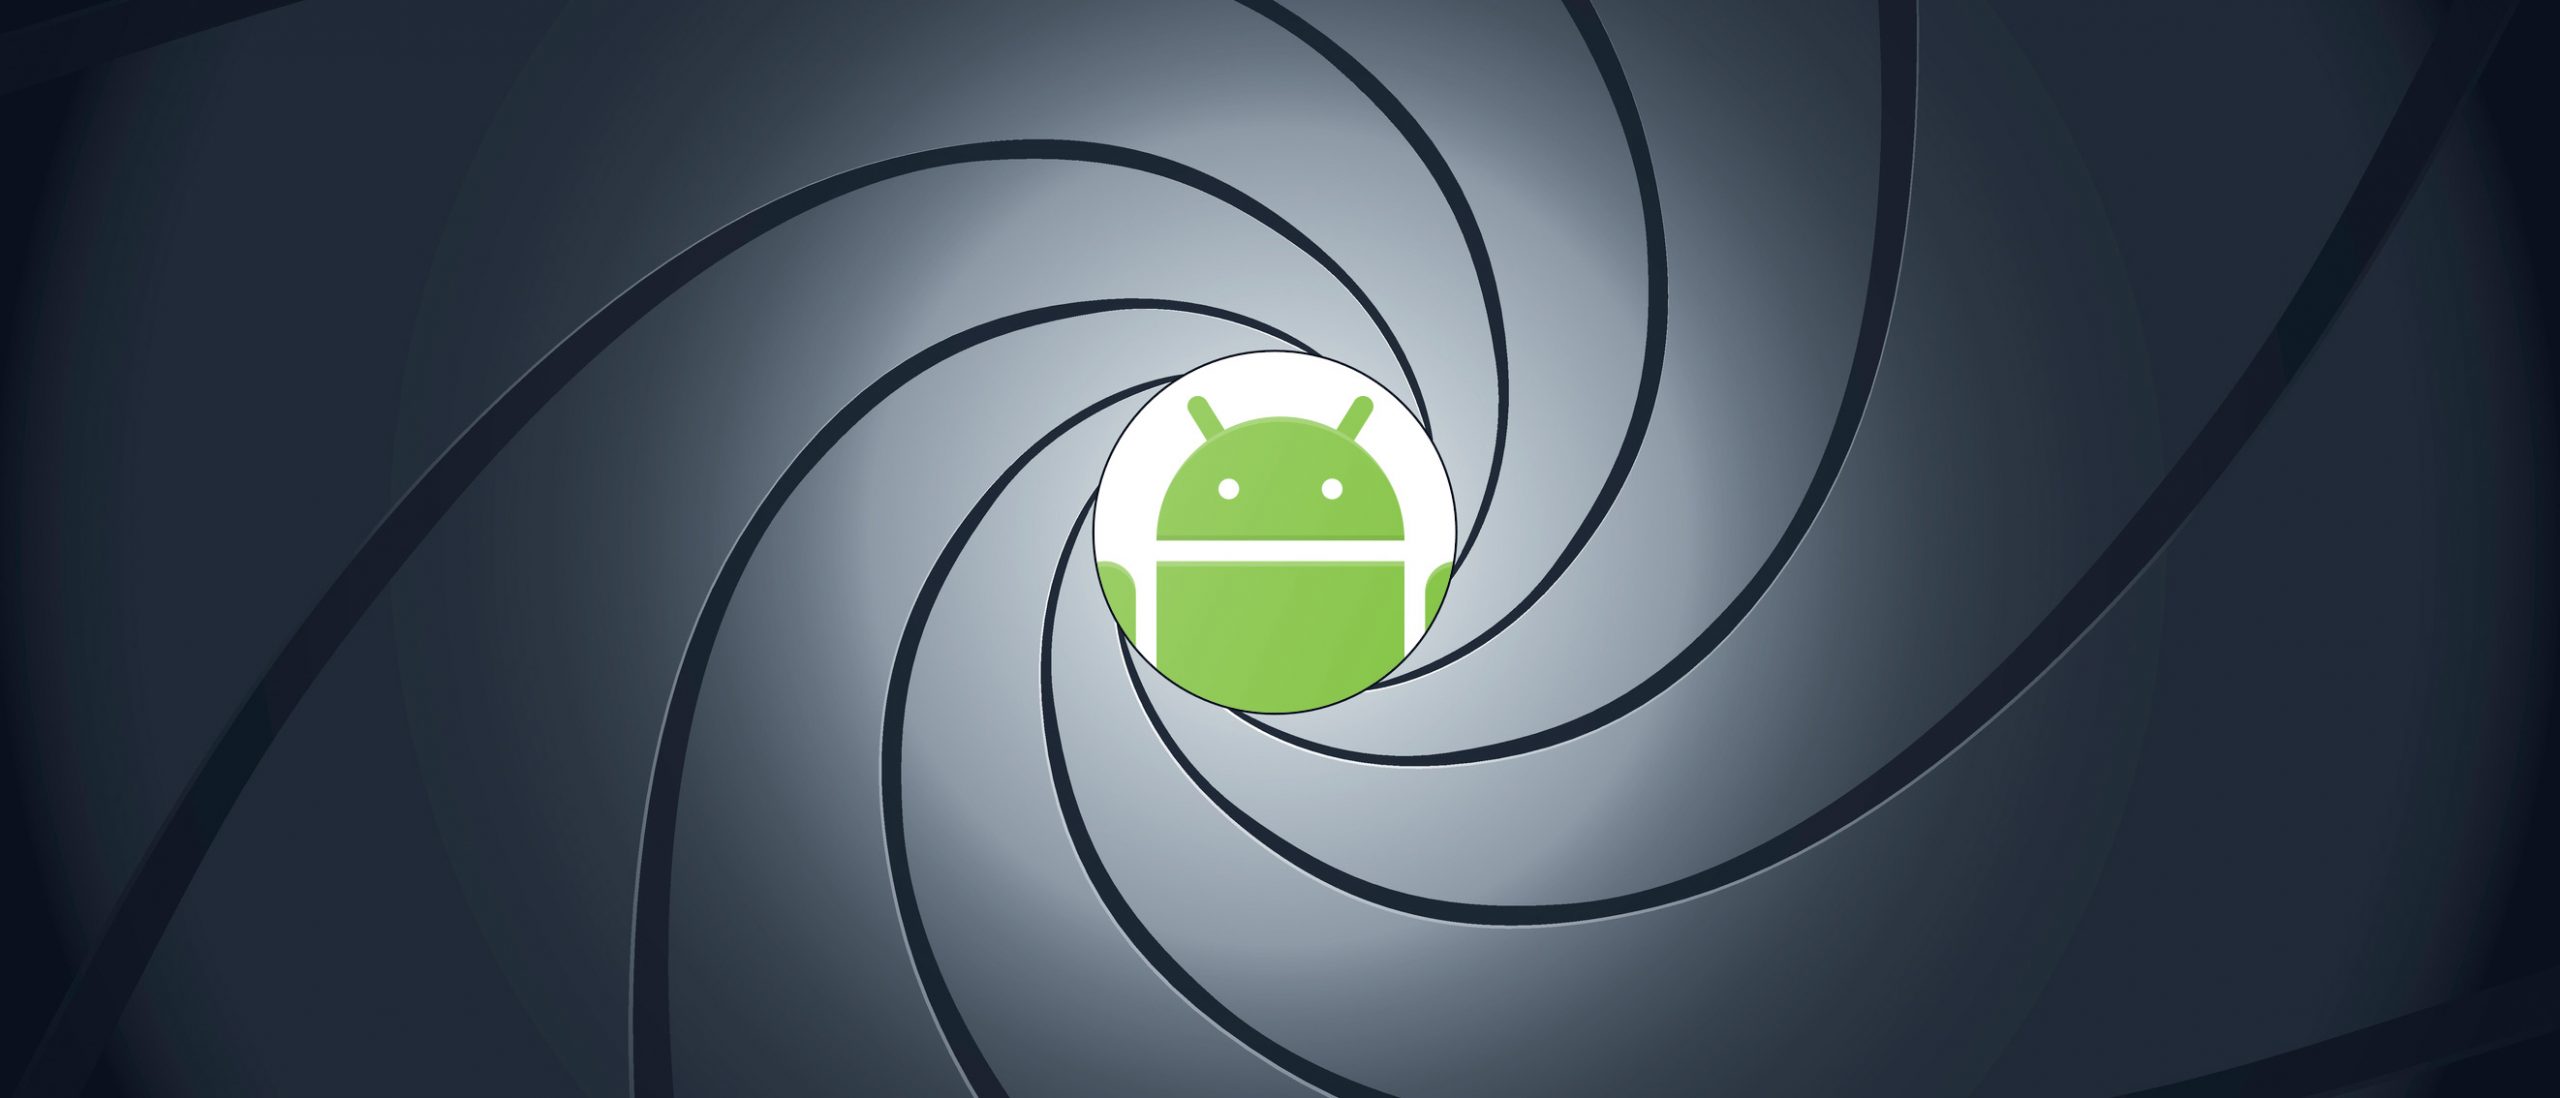 Новое шпионское ПО для Android записывает аудио и отслеживает местоположение